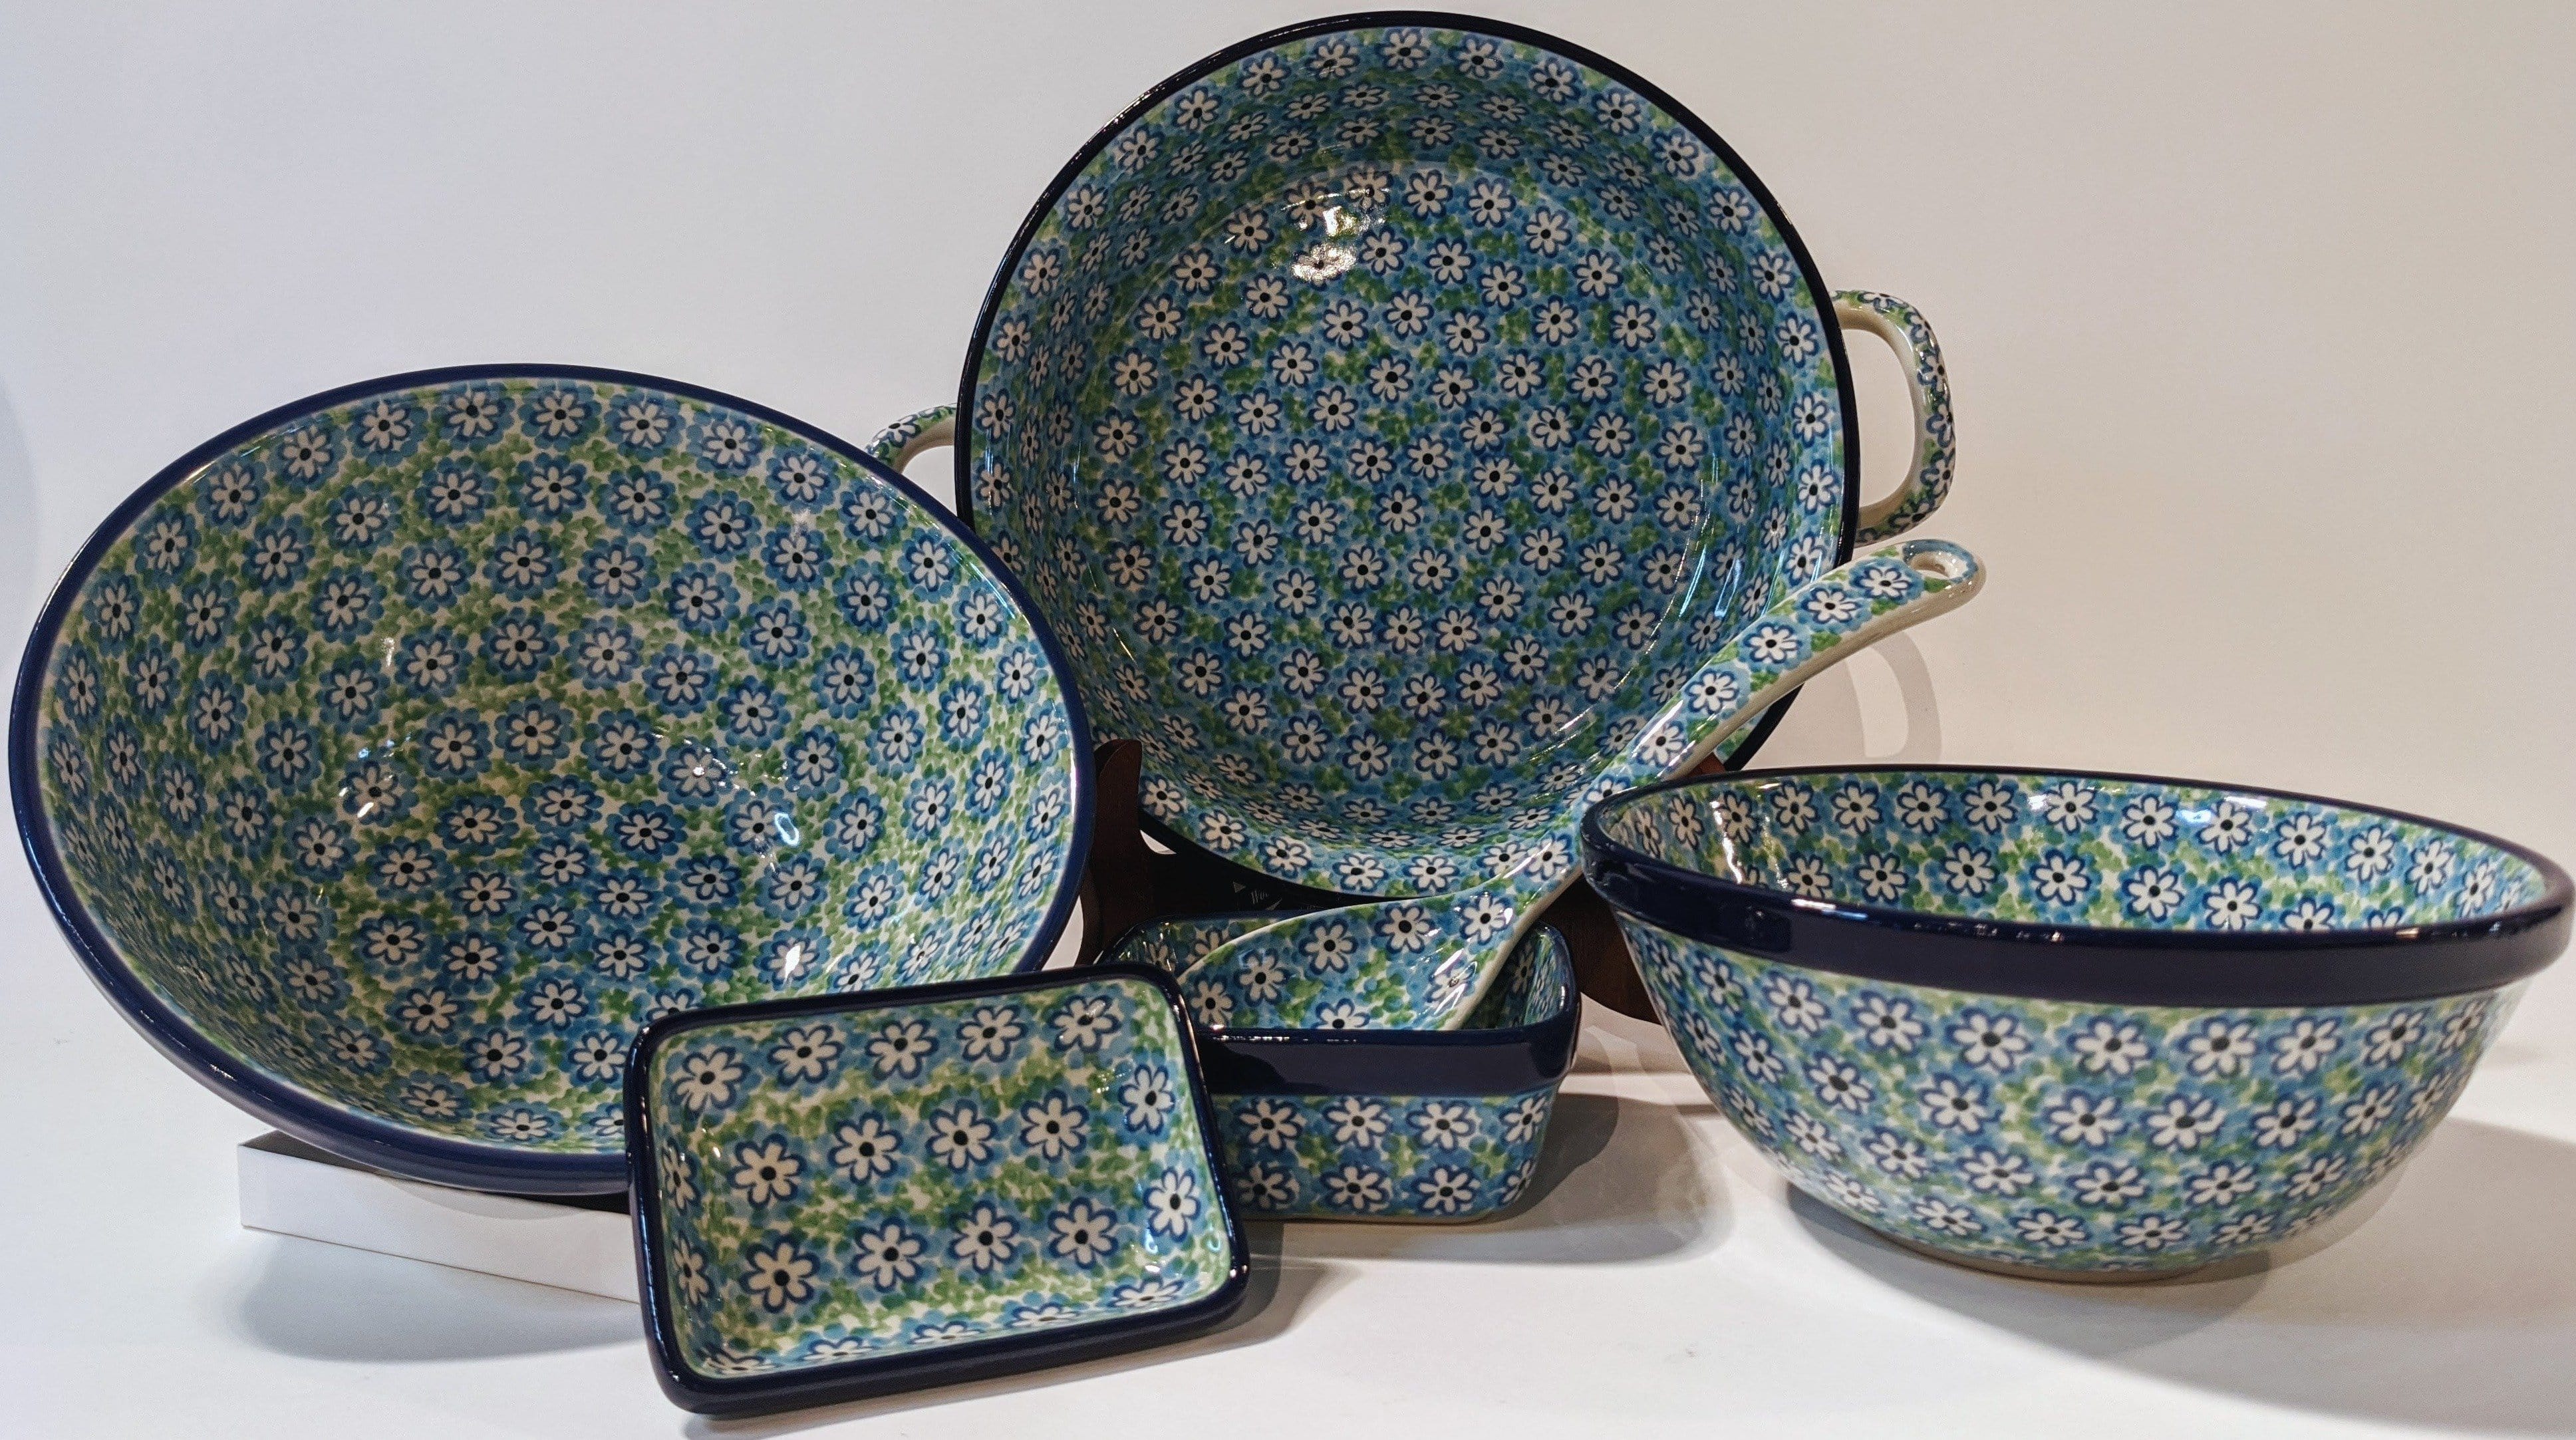 Turquoise Field Ceramika Artystyczna